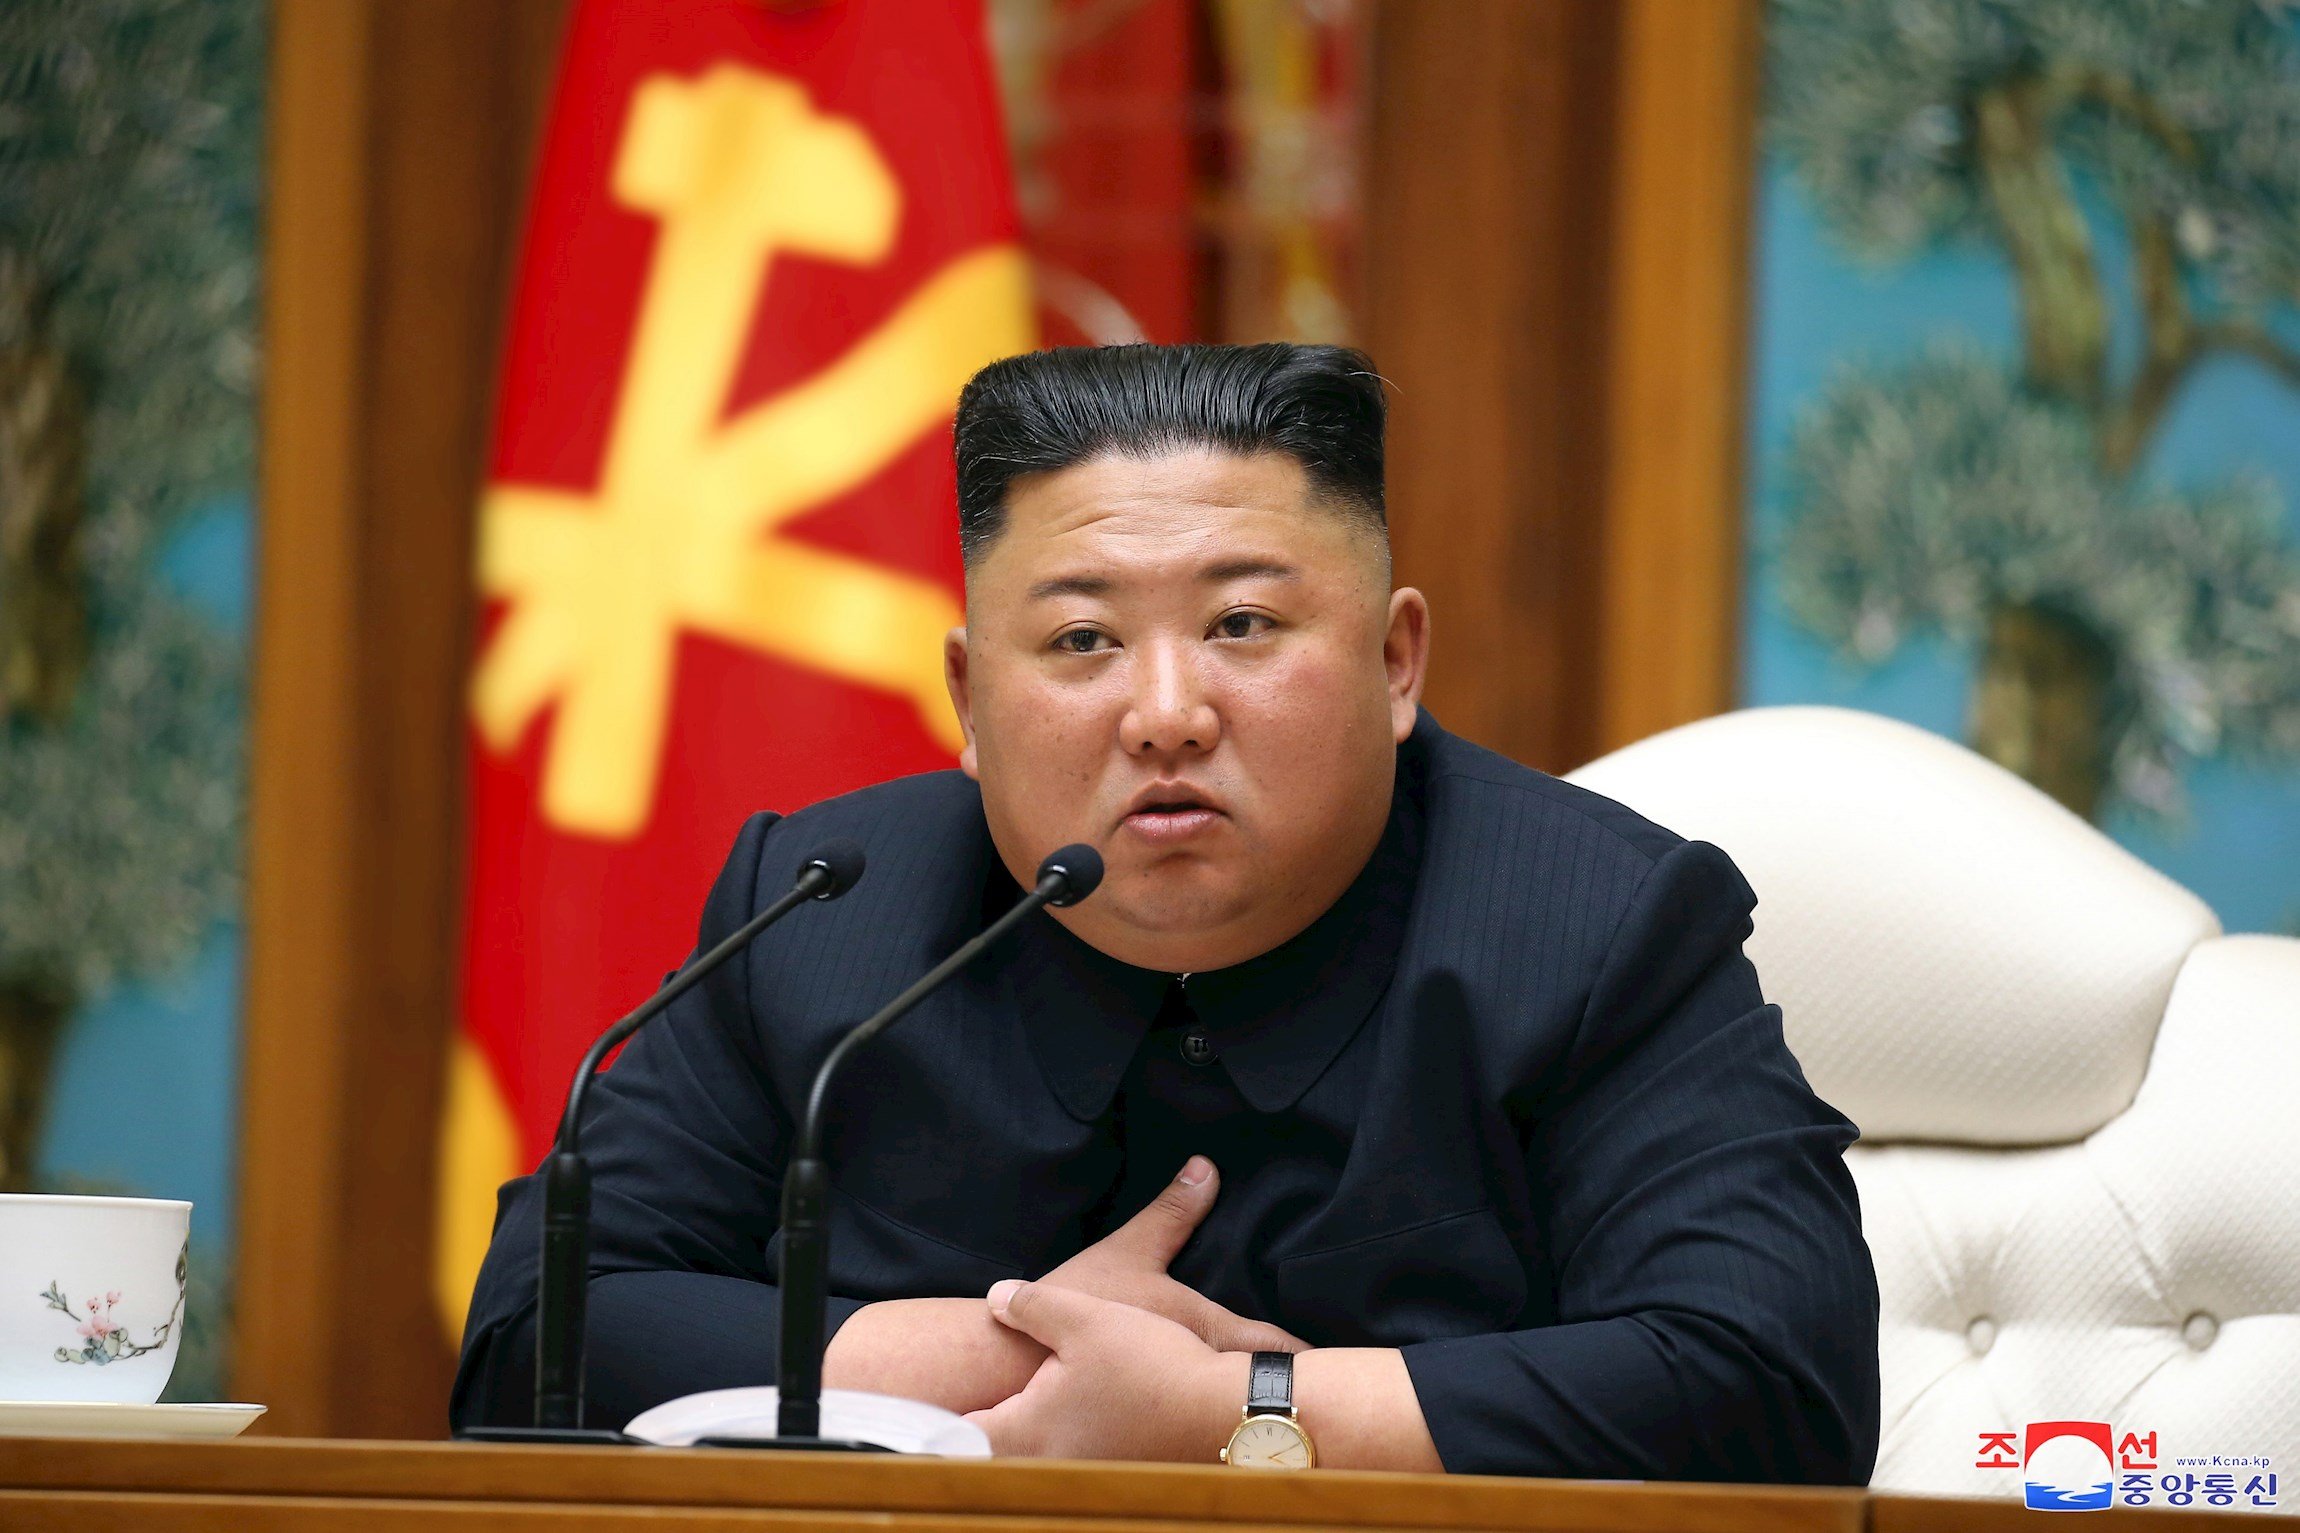 Seül resta credibilitat al suposat estat greu de Kim Jong-un